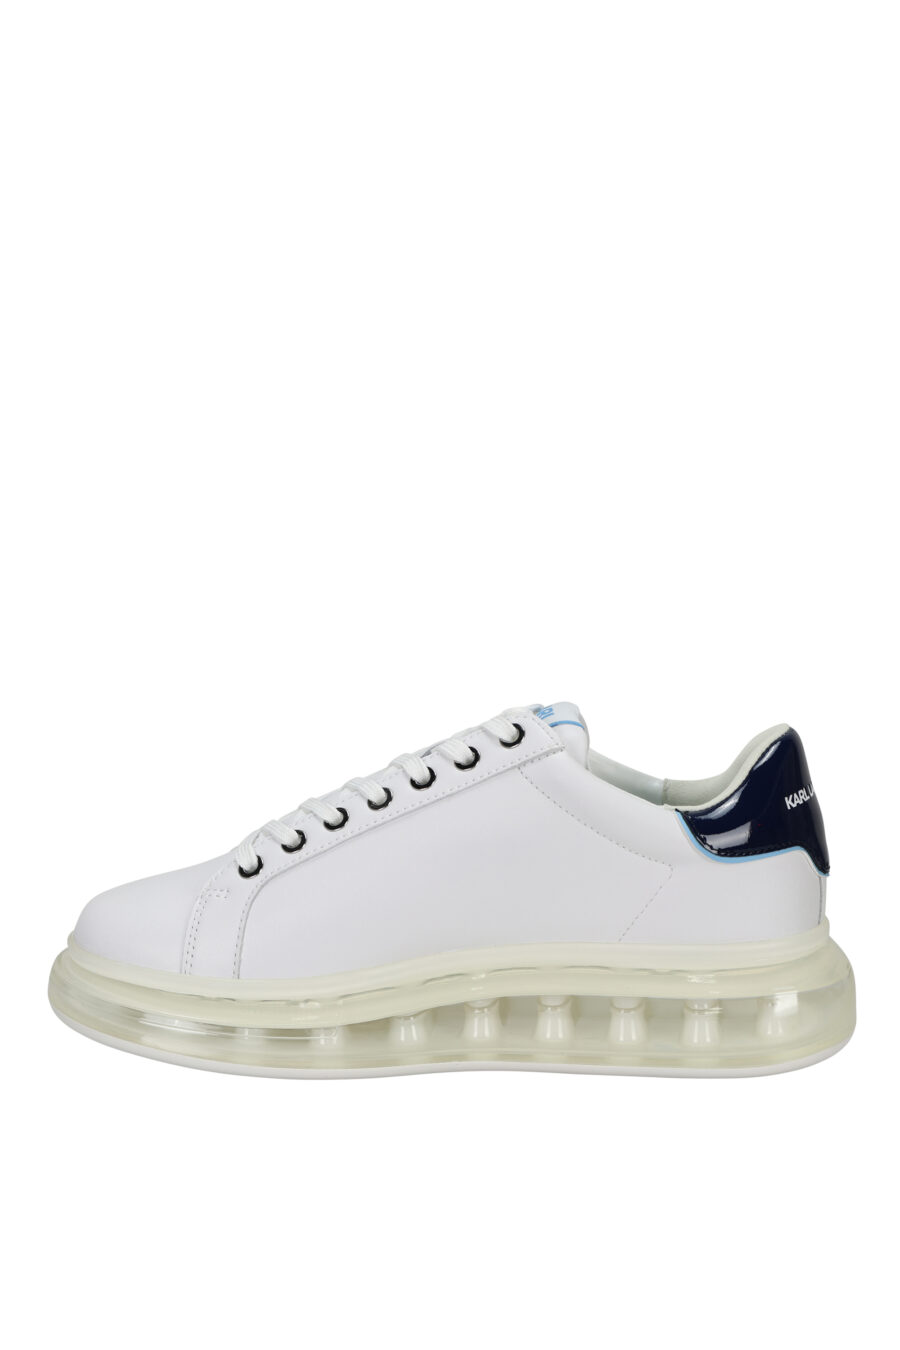 Zapatillas blancas "kapri fushion" con plataforma transparente y minilogo en contorno azul - 5059529396144 2